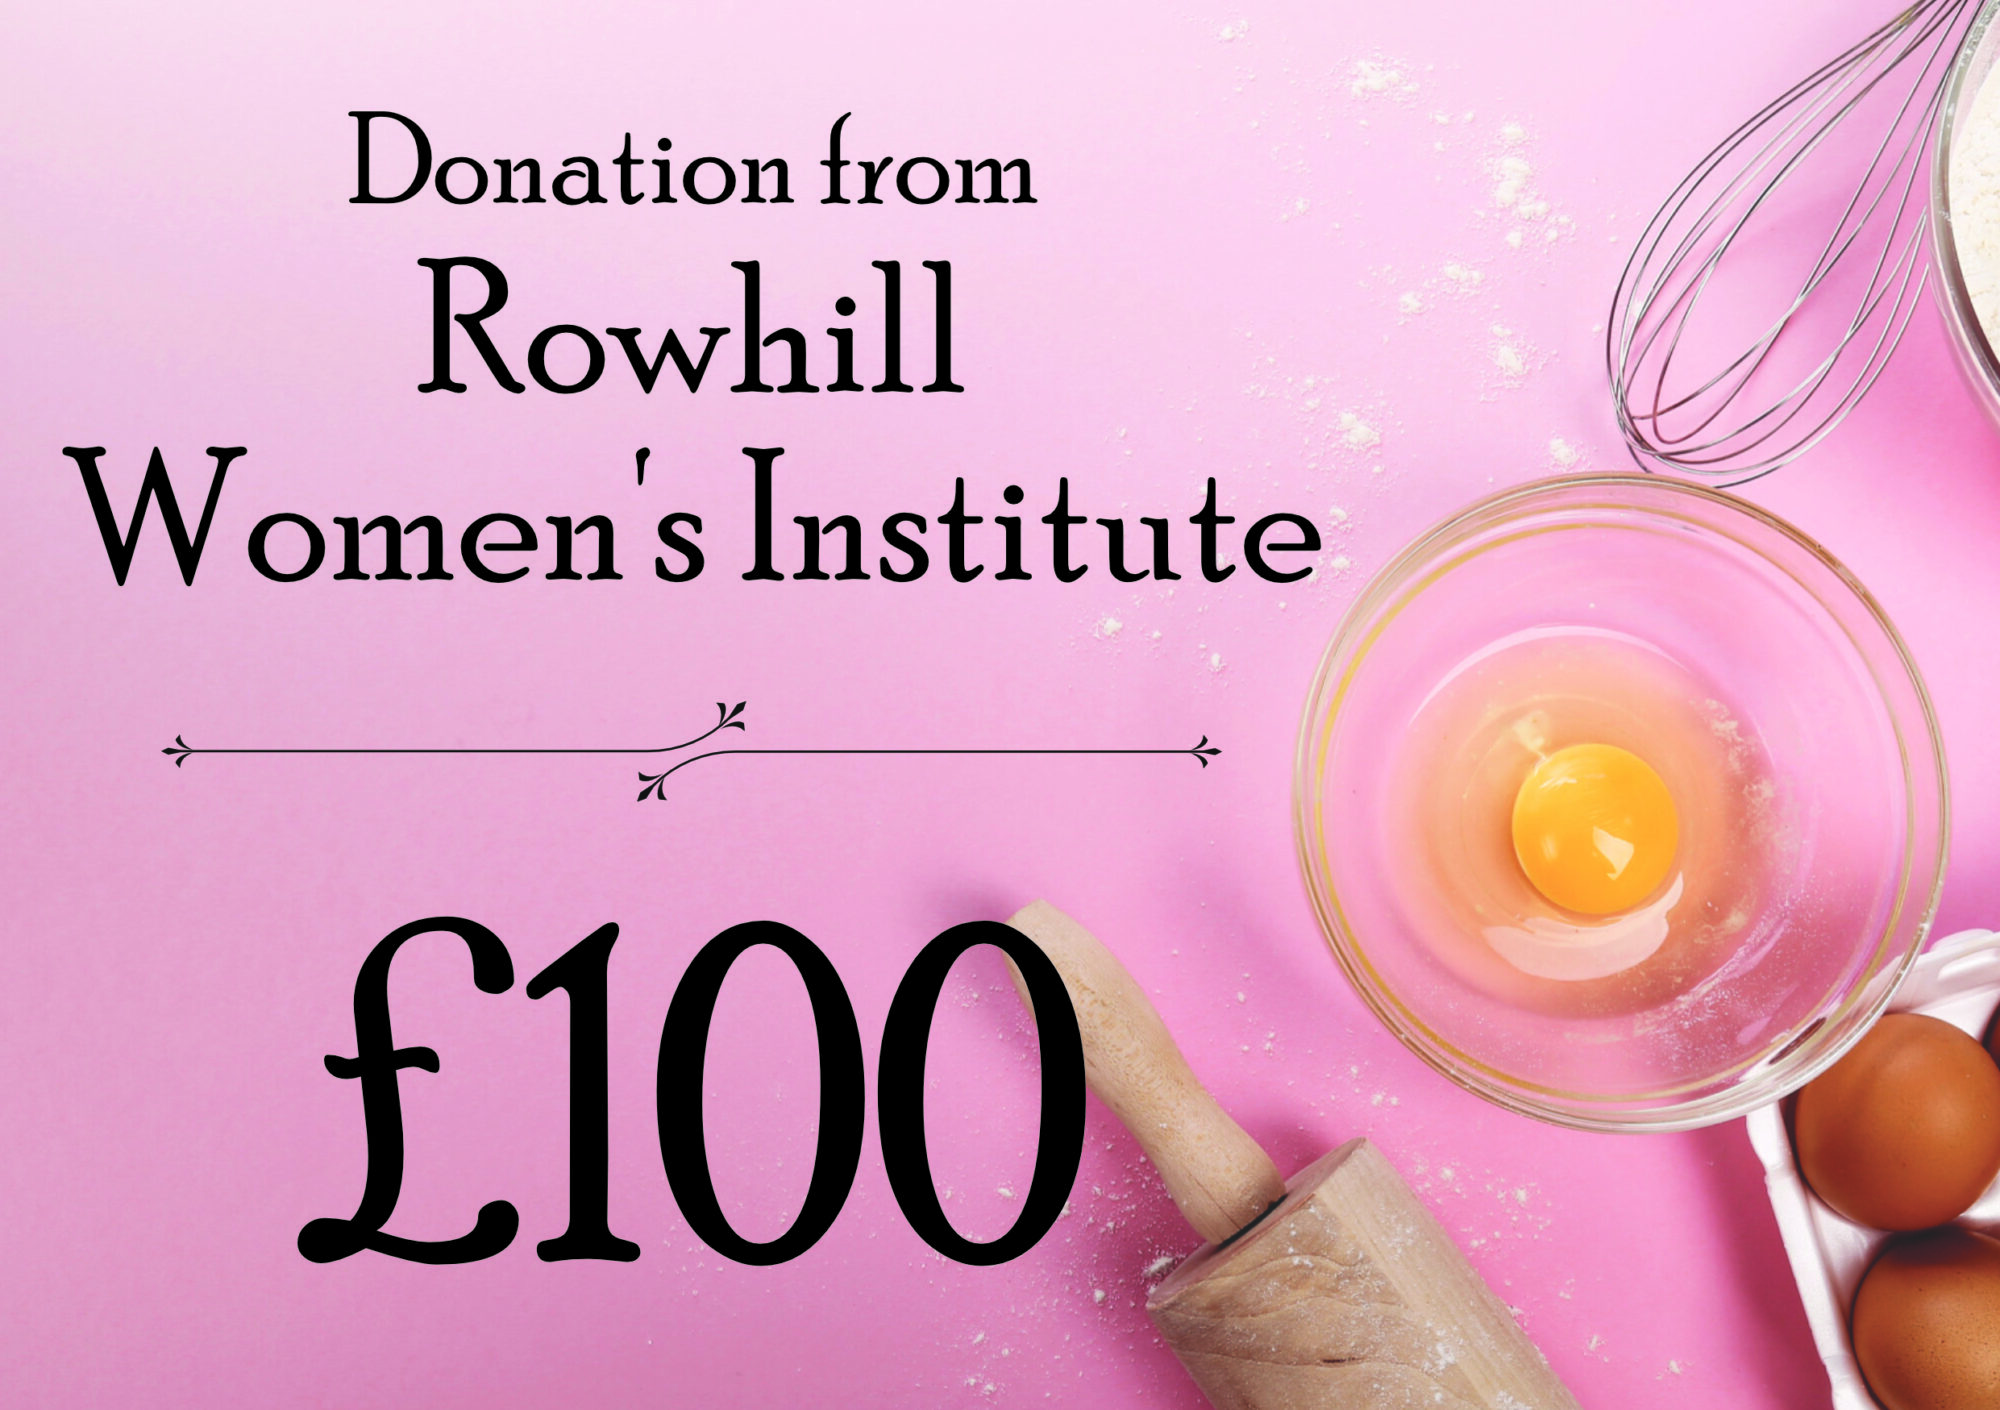 Rowhill Women's Institute